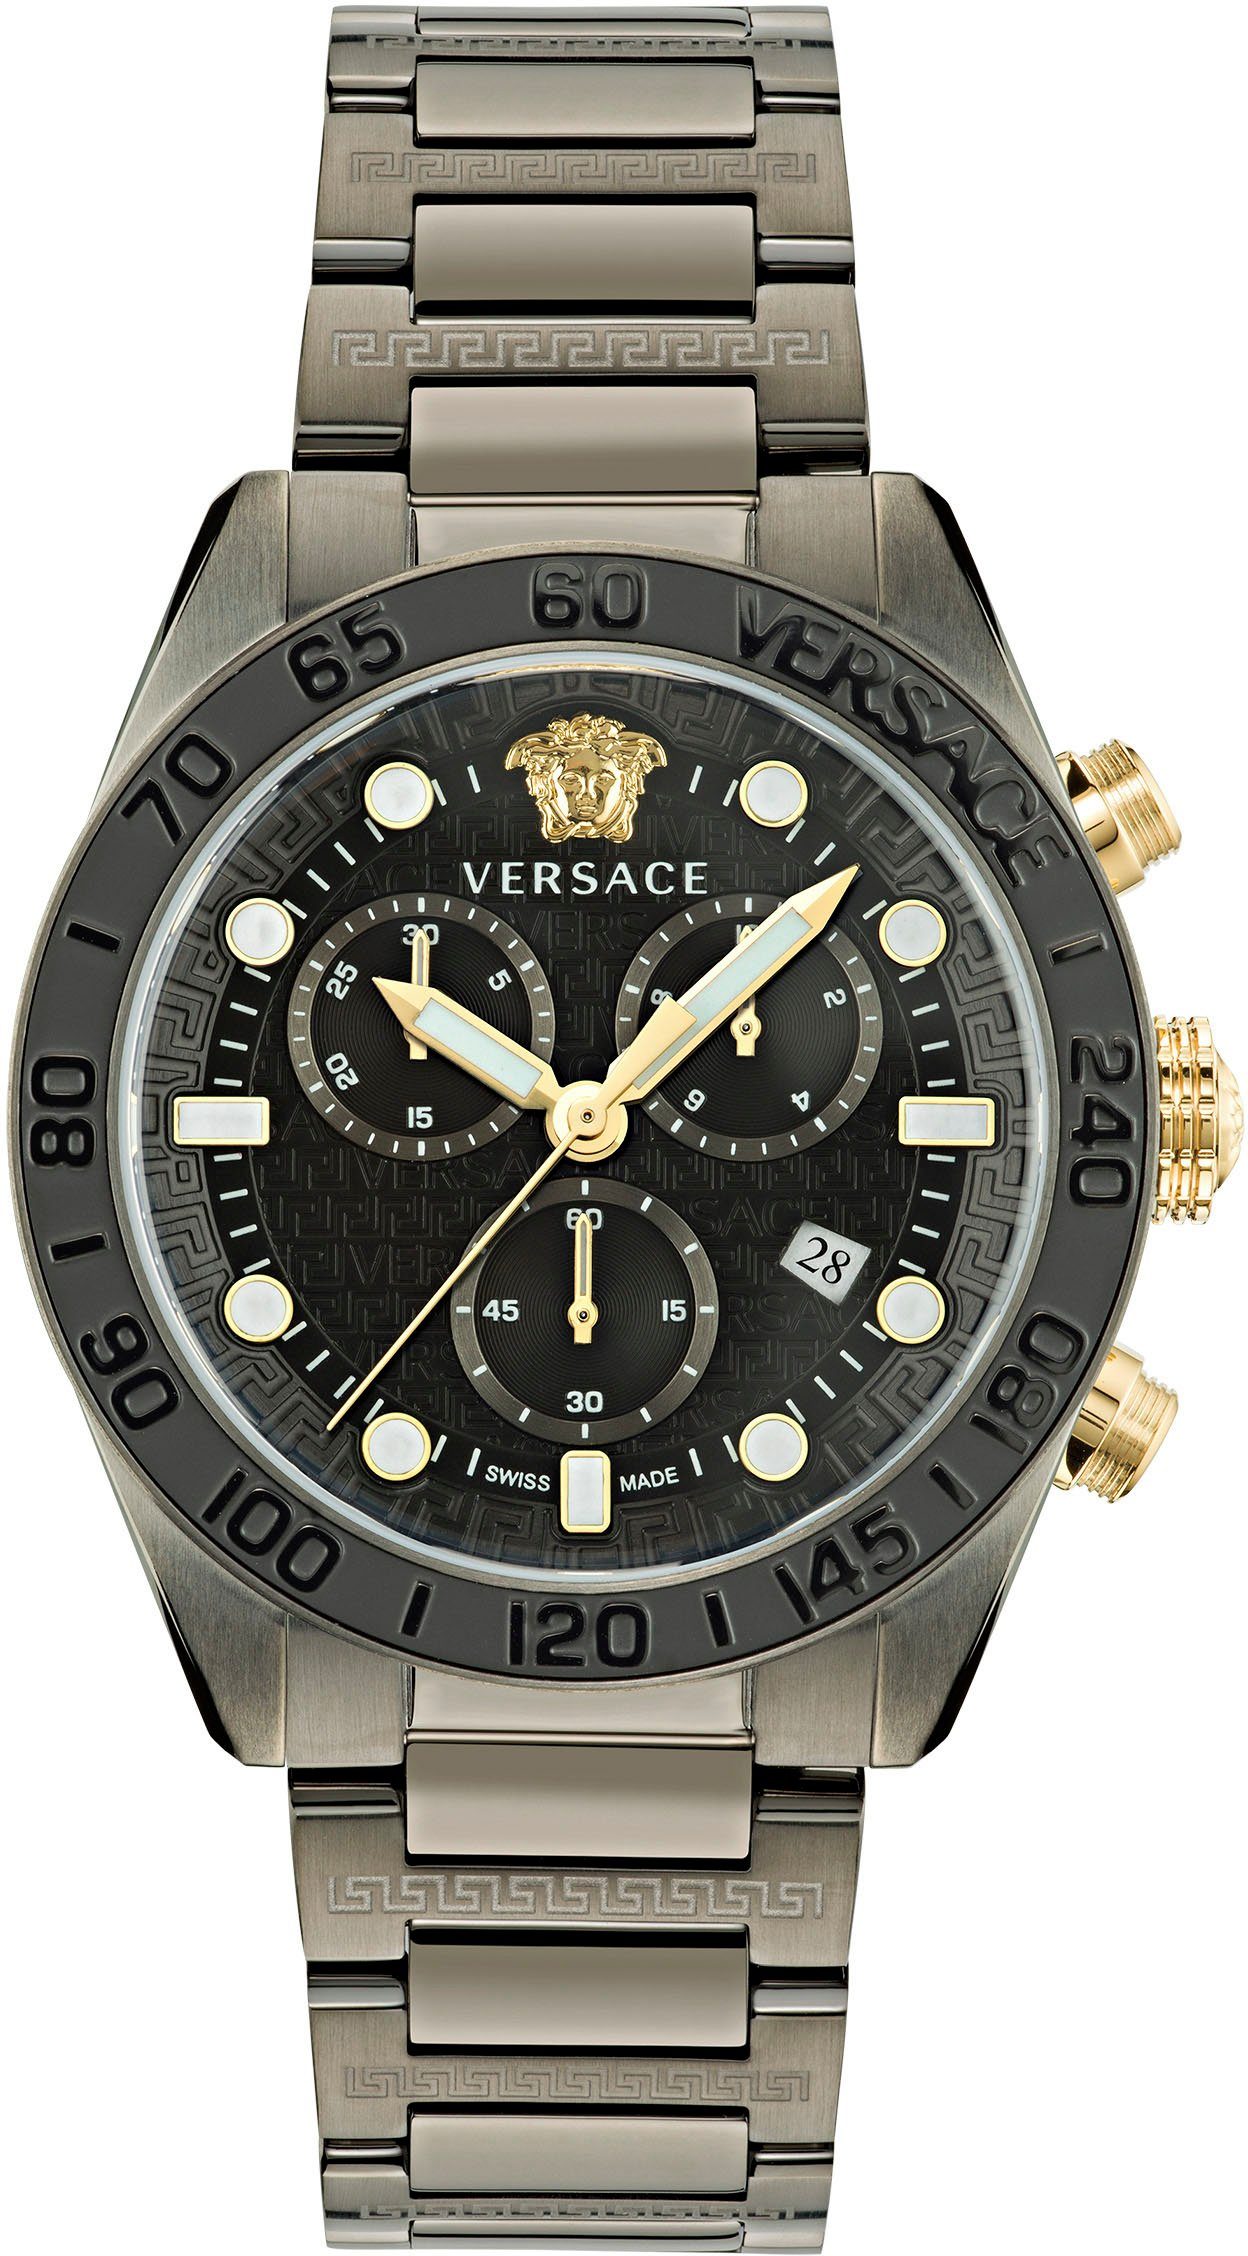 Versace Chronograph GRECA DOME CHRONO, VE6K00623 schwarz | Schweizer Uhren